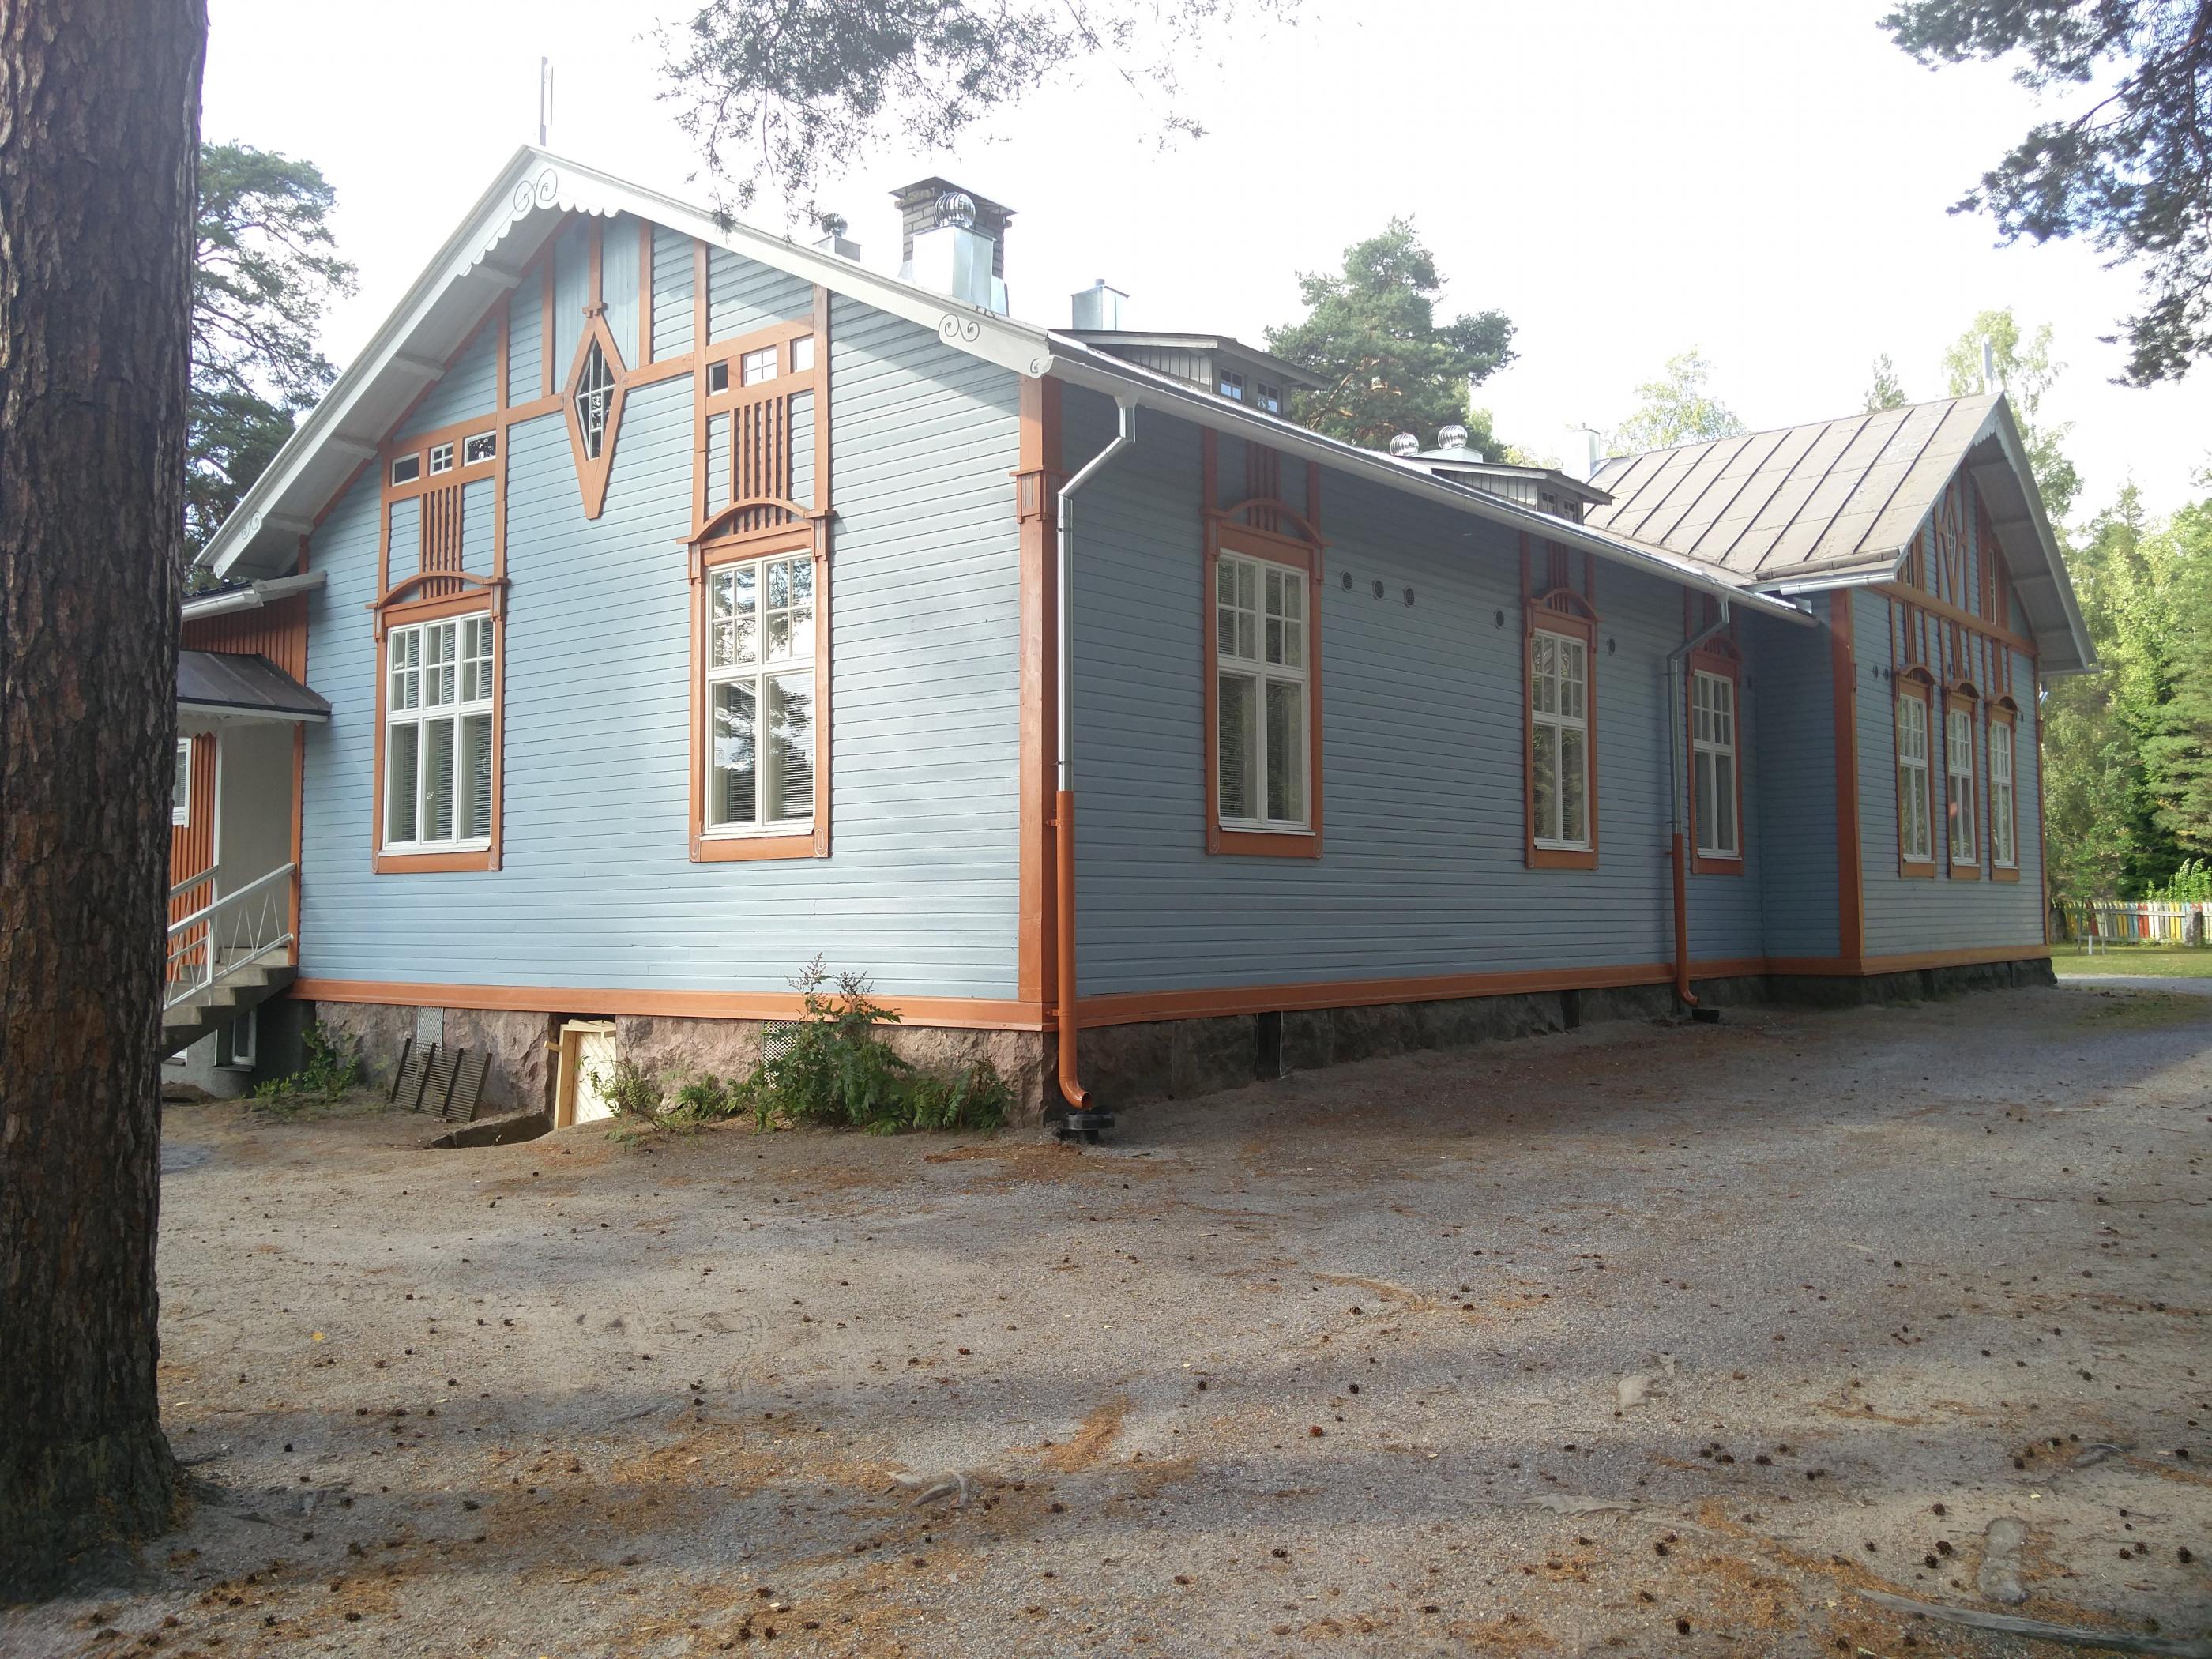 Paijula school, Nousiainen